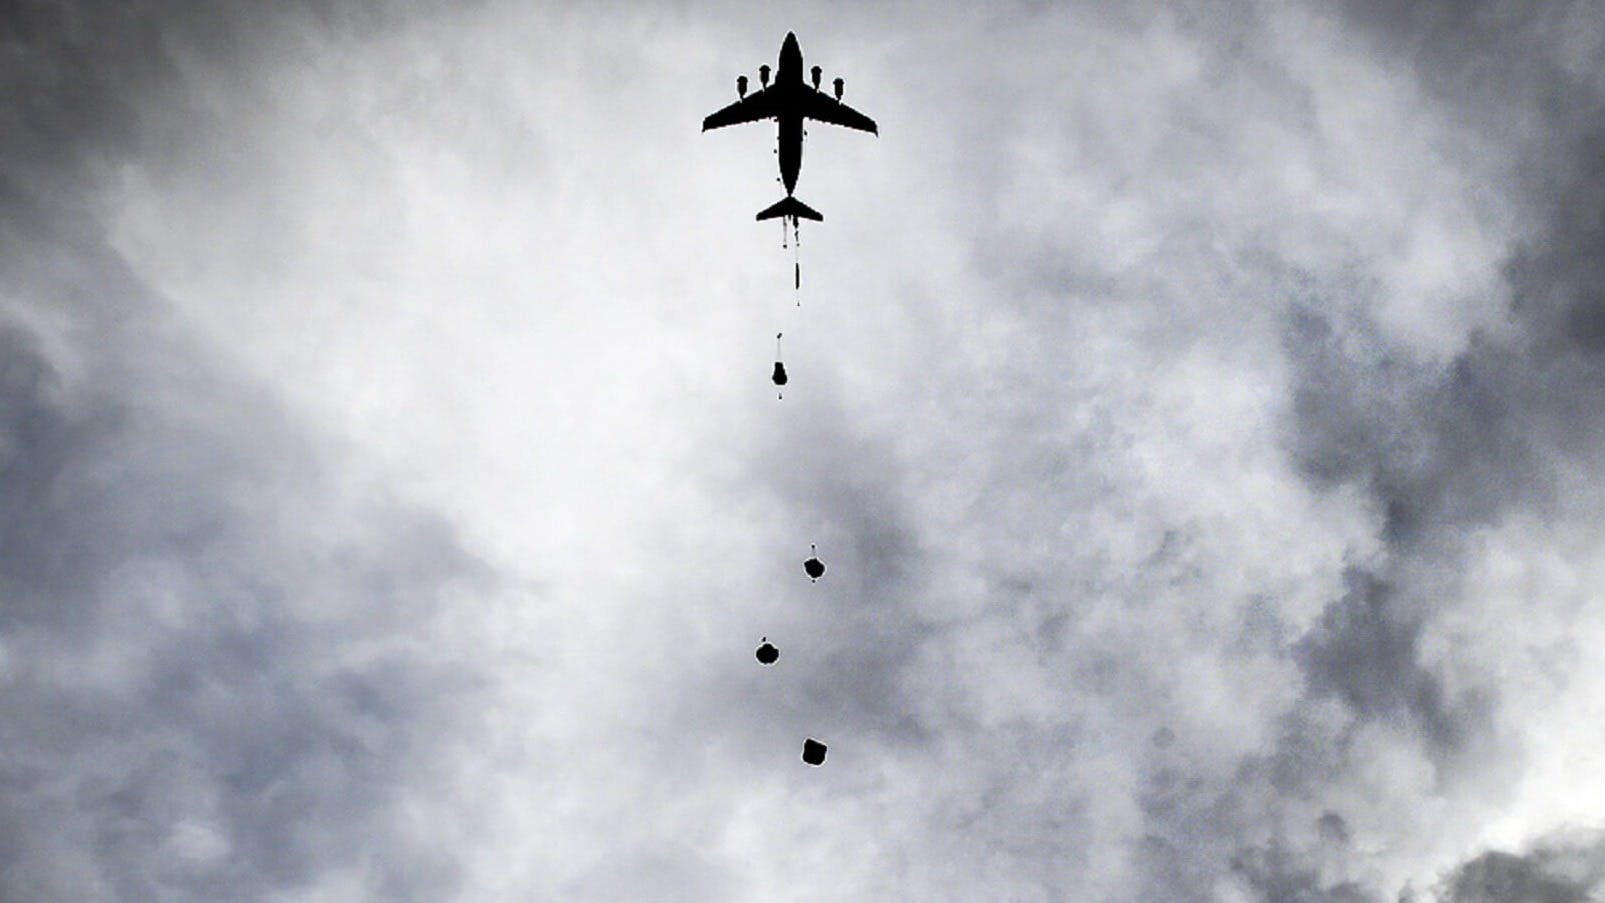 In alto, orizzontalmente al centro, si trova un aereo da caccia che sta sganciando bombe. Il cielo è coperto da nuvole scure. La foto è in bianco e nero.